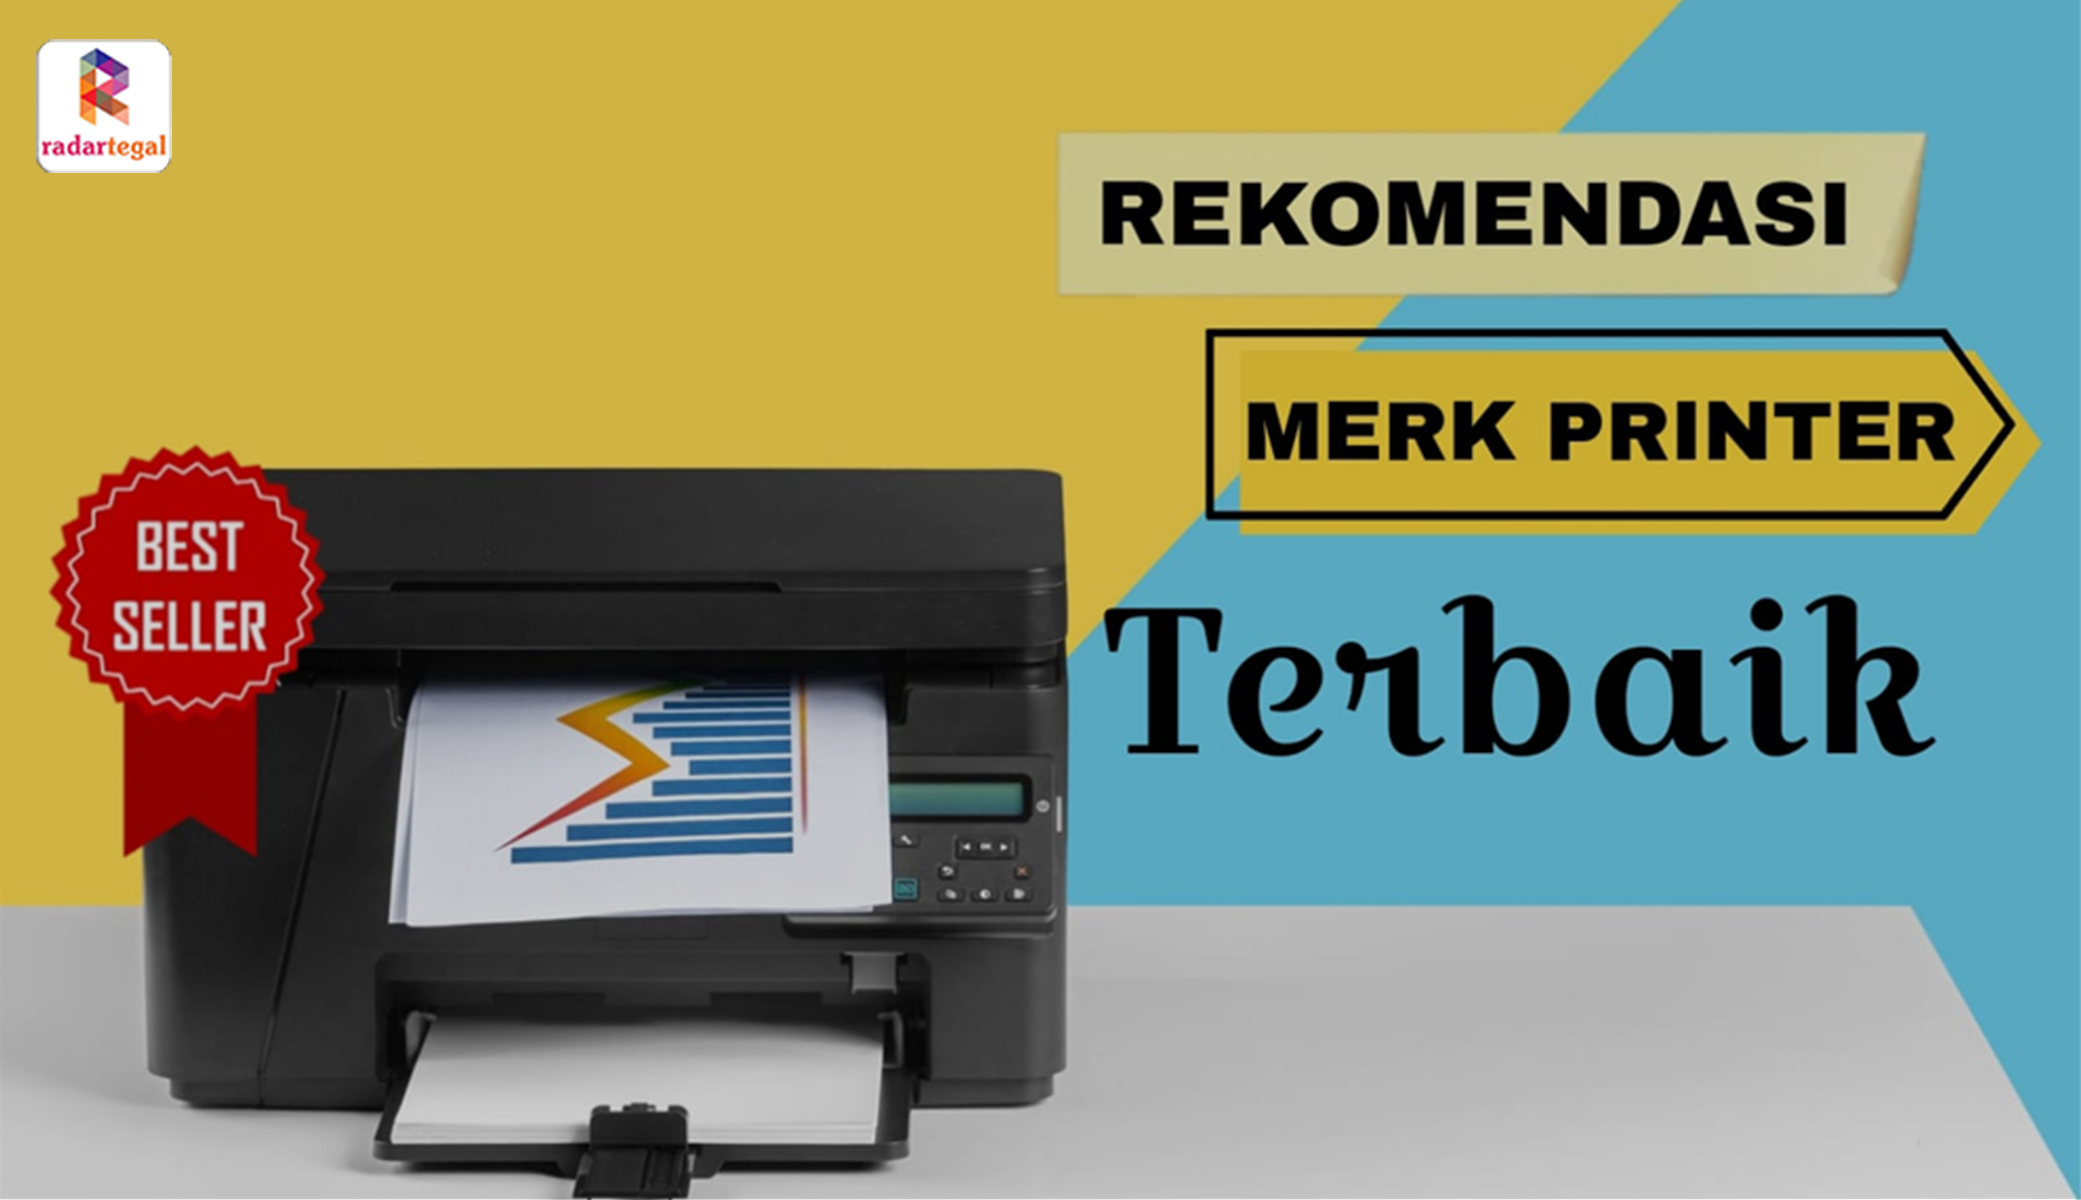 Rekomendasi Merk Printer Terbaik Harga Murah, Cocok untuk Anggota KPPS, Harga 1 Jutaan Aja